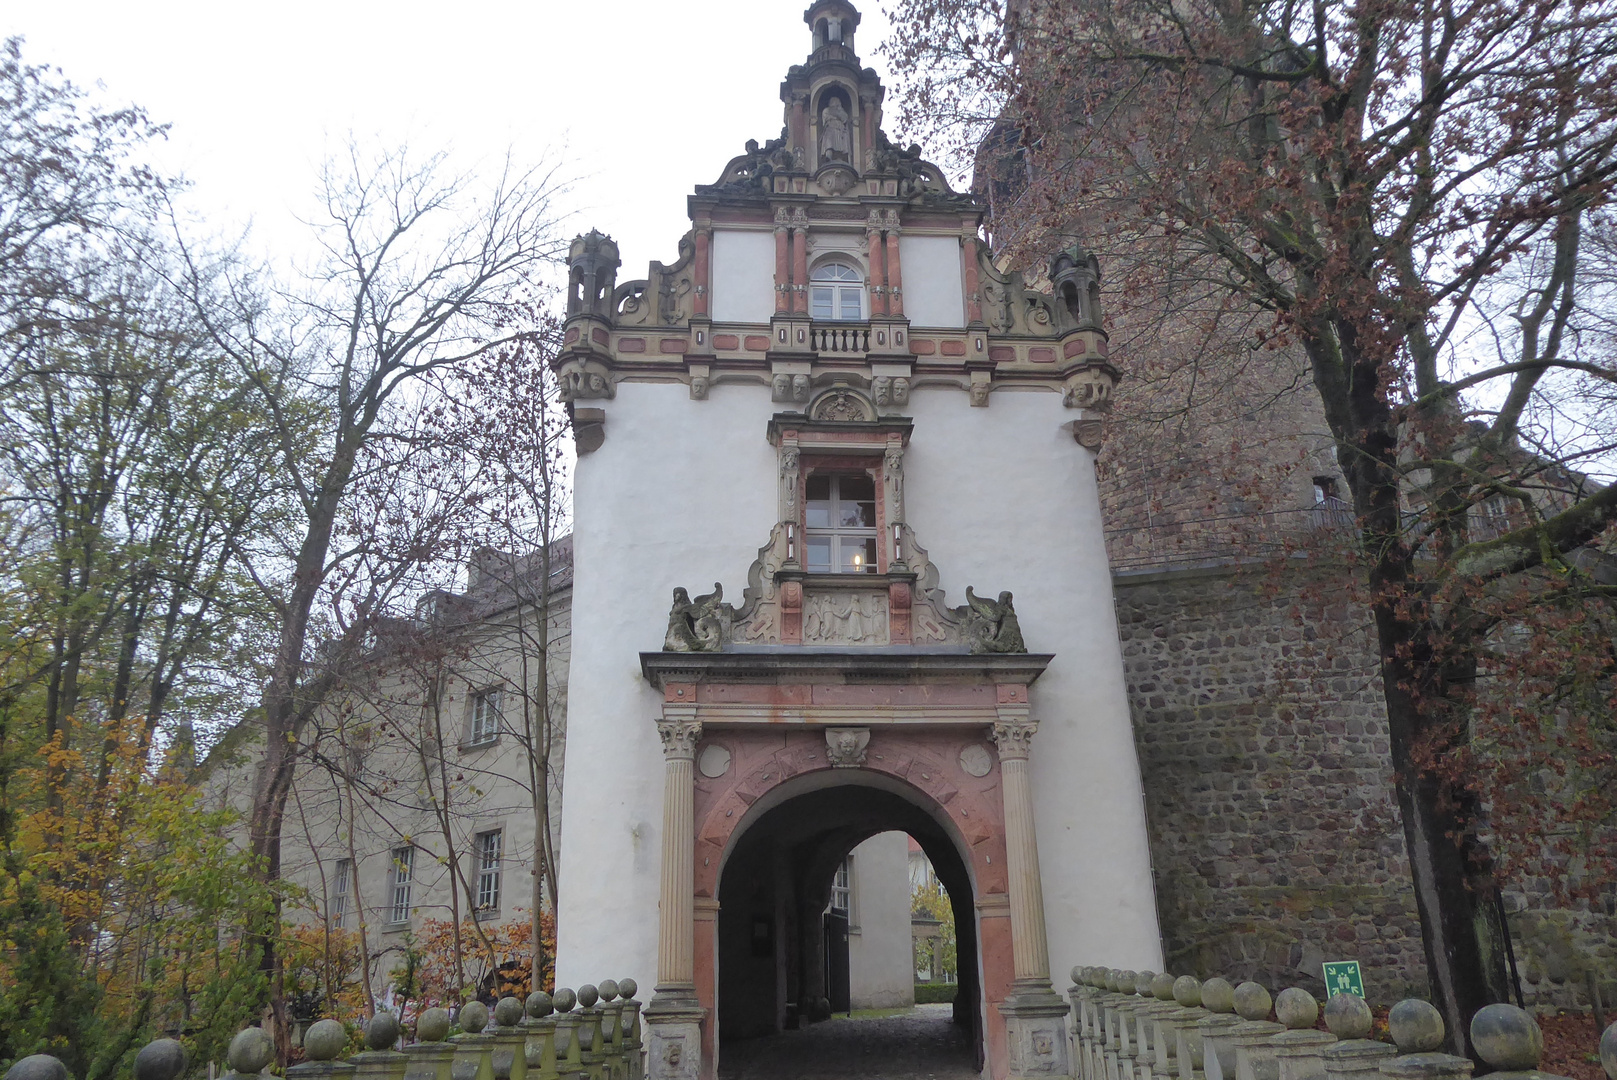 Durchblick zum Wiesenburger Schloss